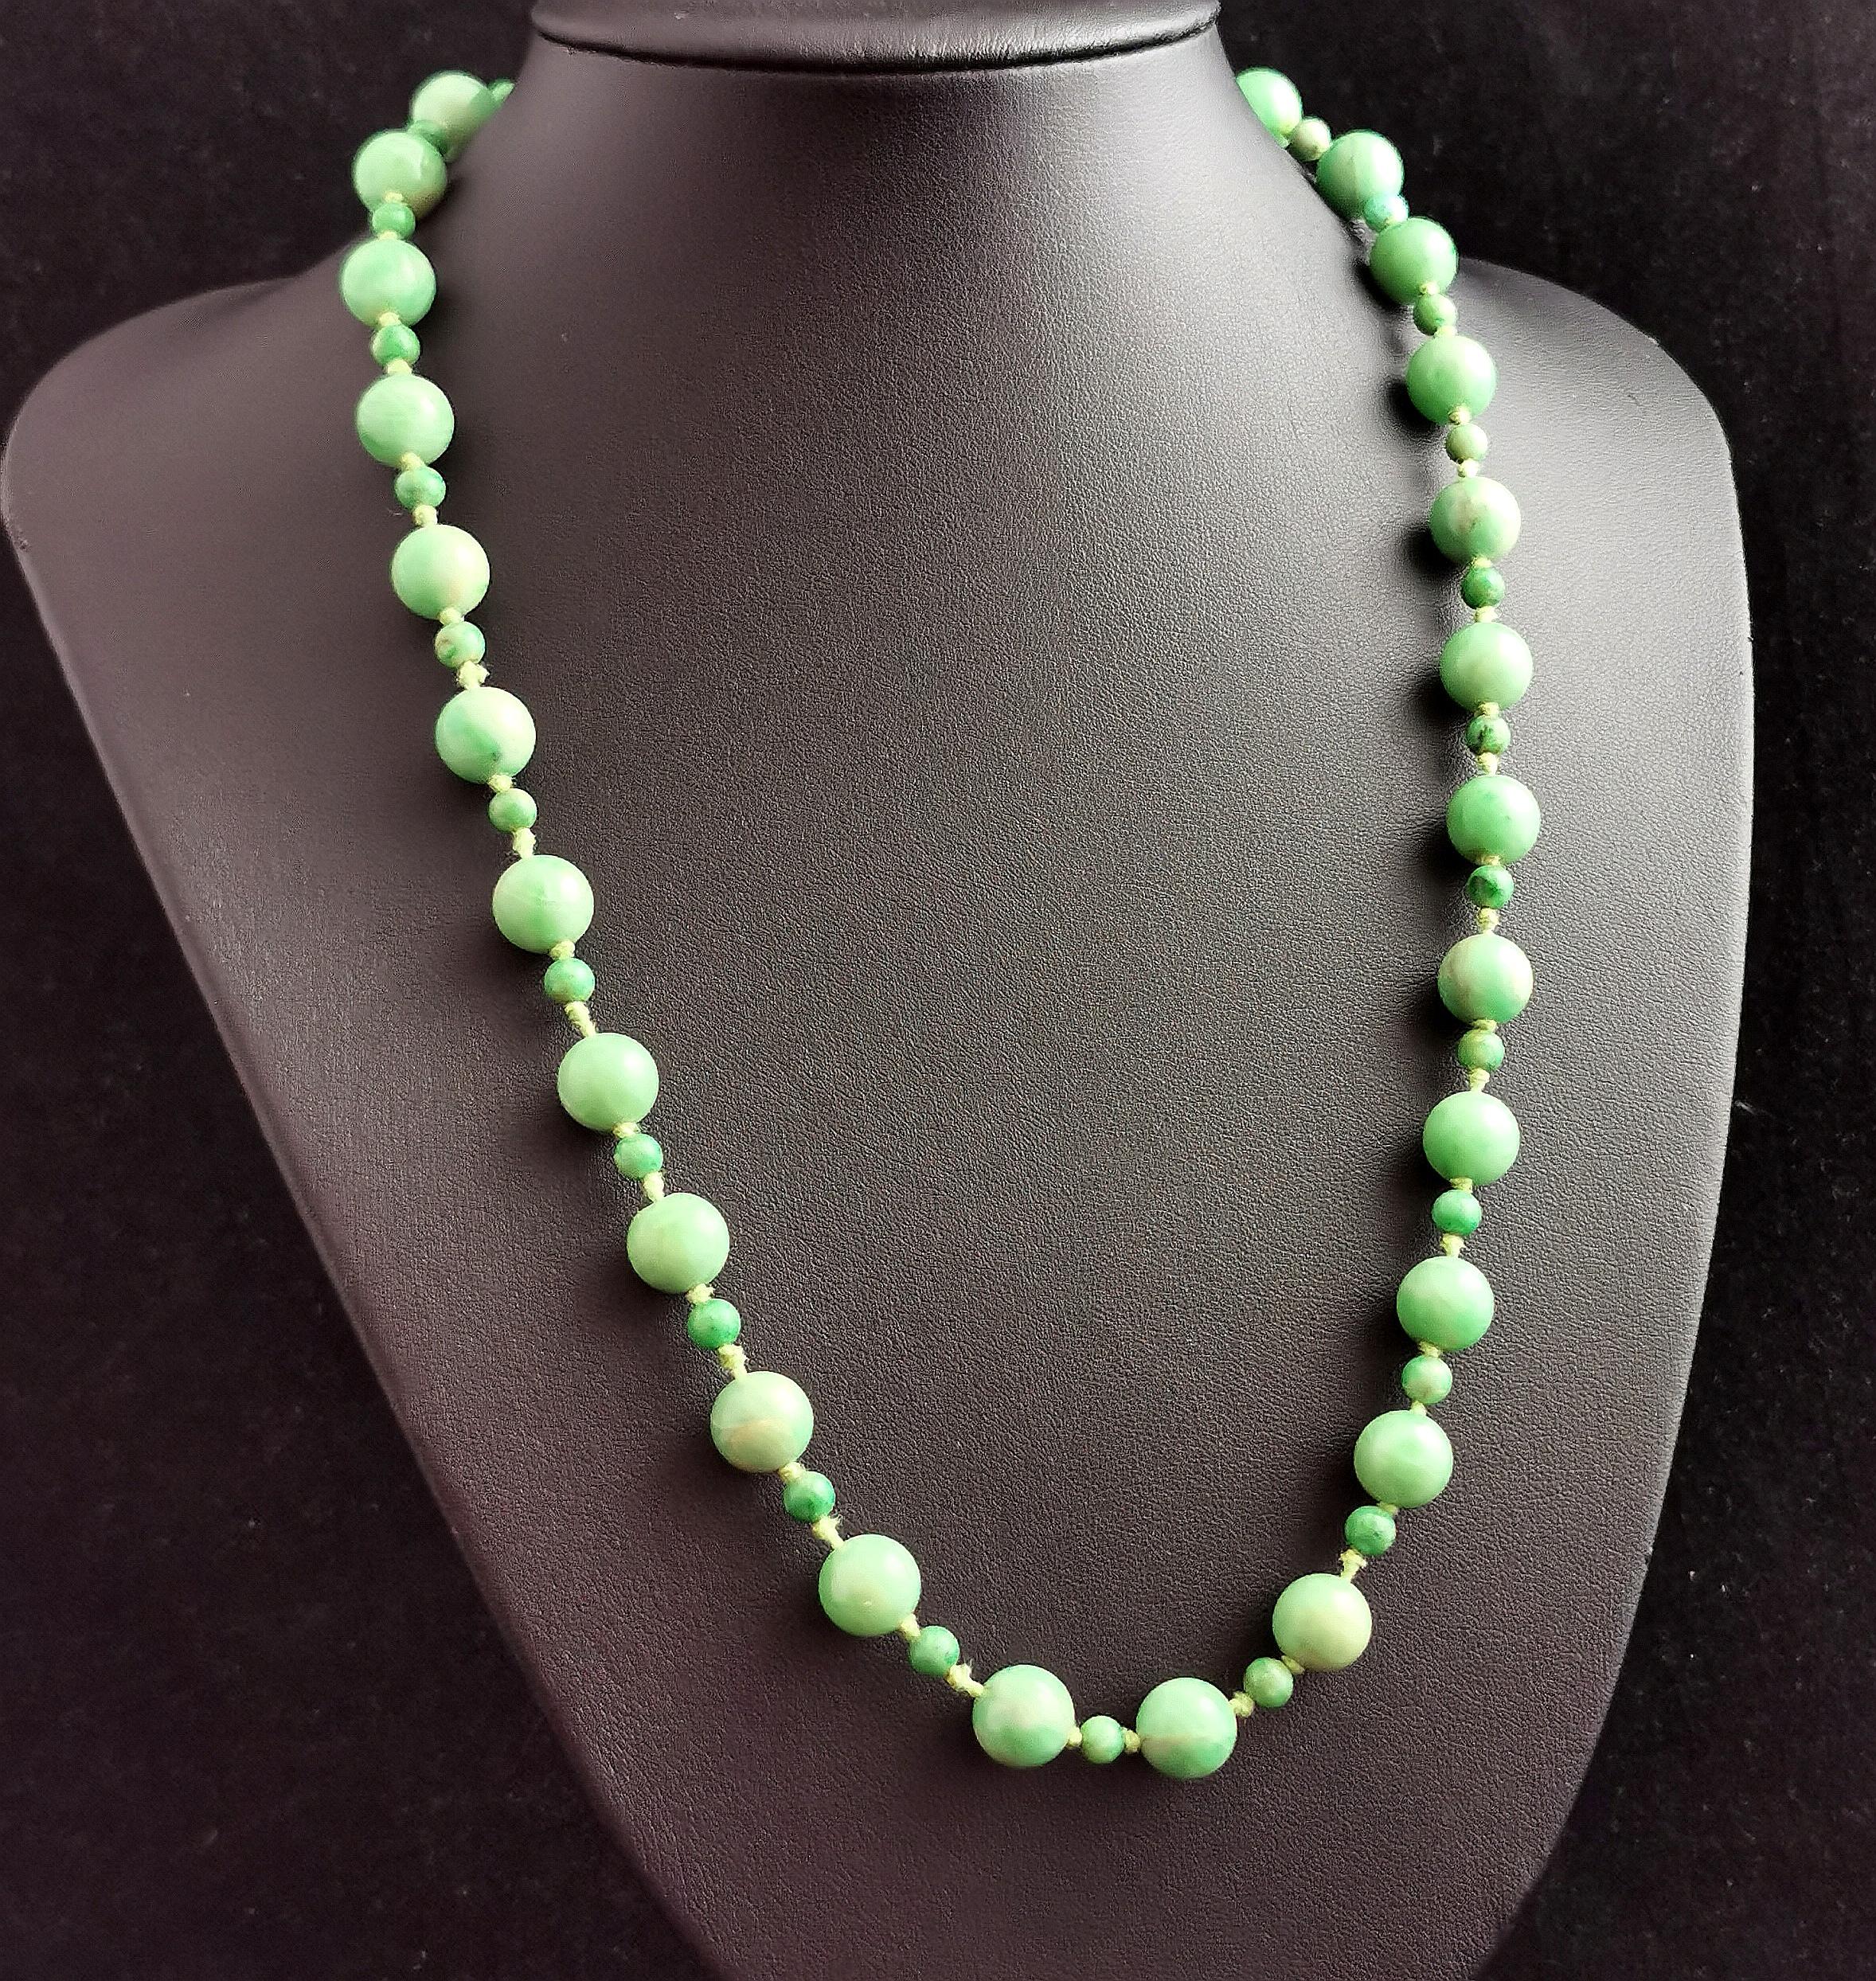 Eine schöne antike Art Deco Ära Jadeit Jade Perle Halskette.

Hübsche apfelgrüne Perlen mit schönen Farbvariationen von fast weiß bis zu dunkleren grünen Streifen, alle fein von Hand geformt und fest auf einen Baumwollfaden geknotet.

Die Perlen